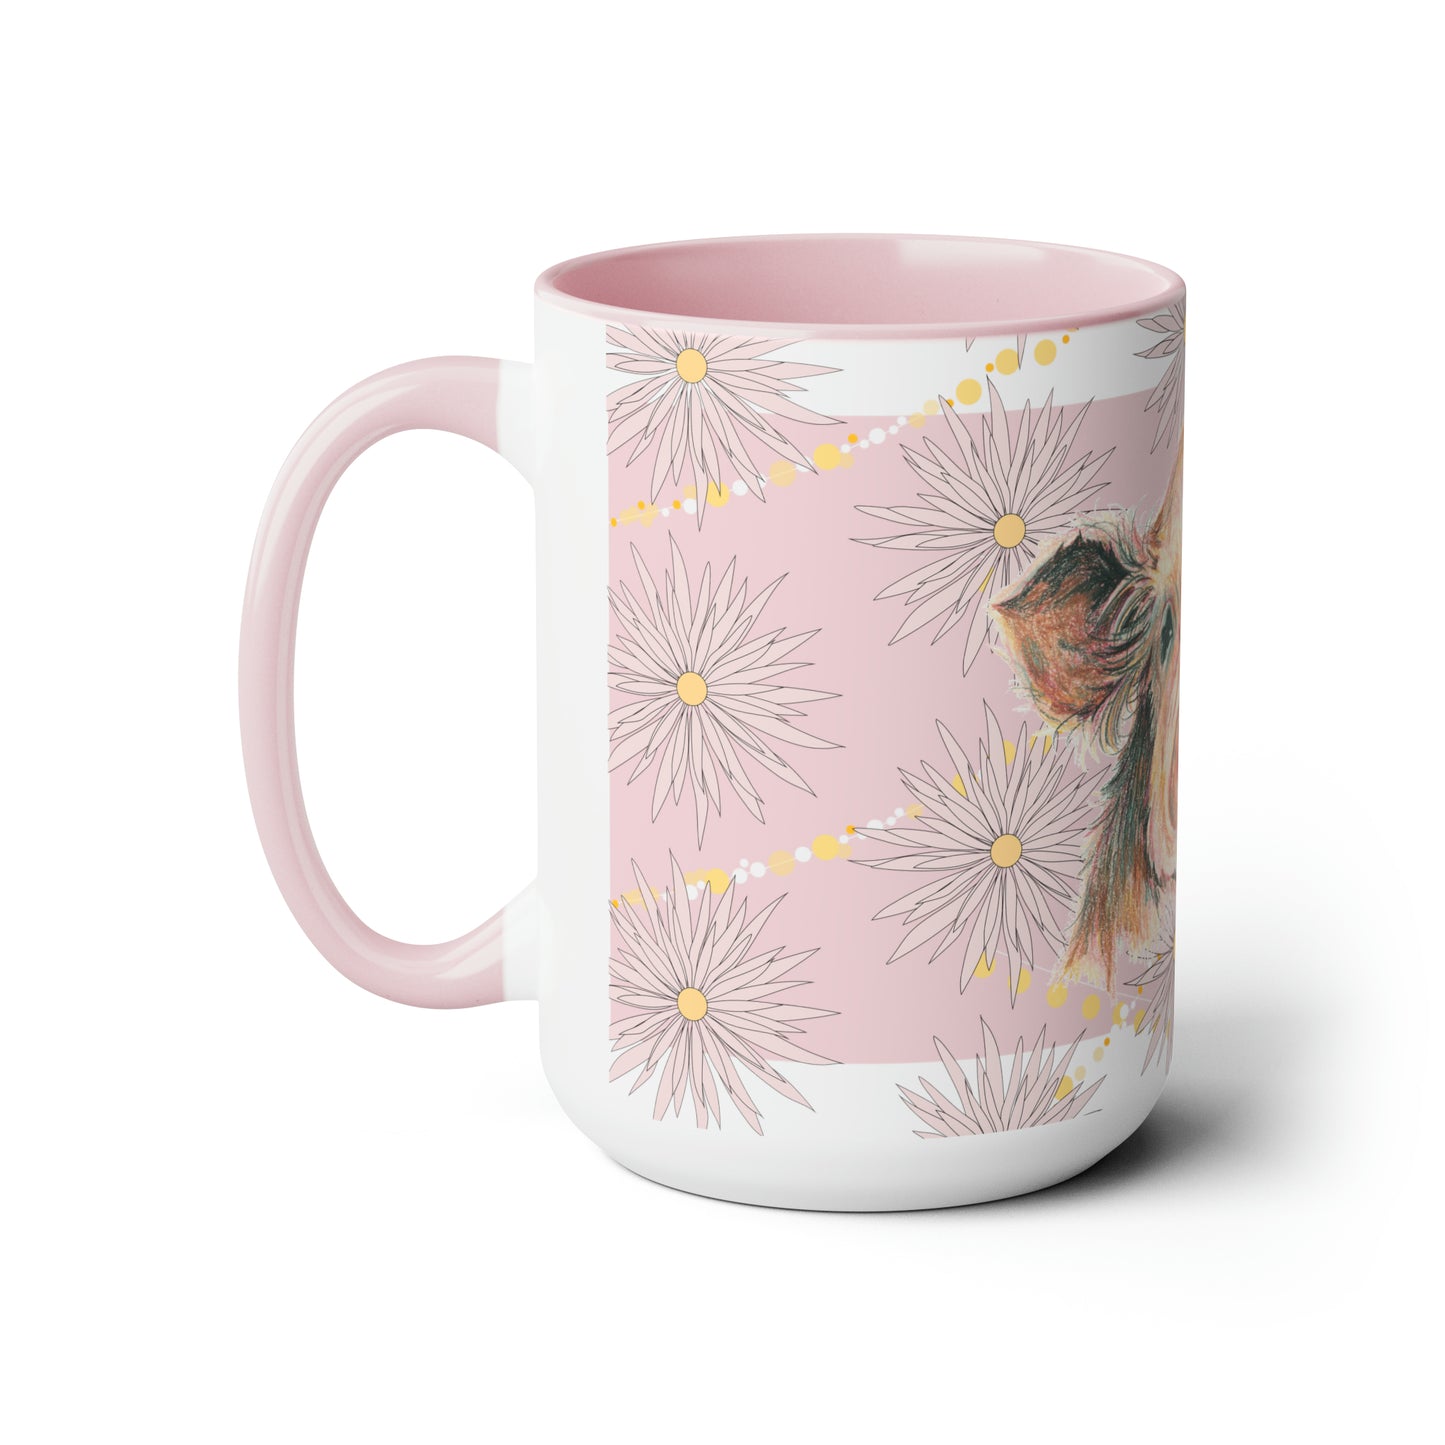 Original Pig Art Pink & White Coffee Mug, 15oz